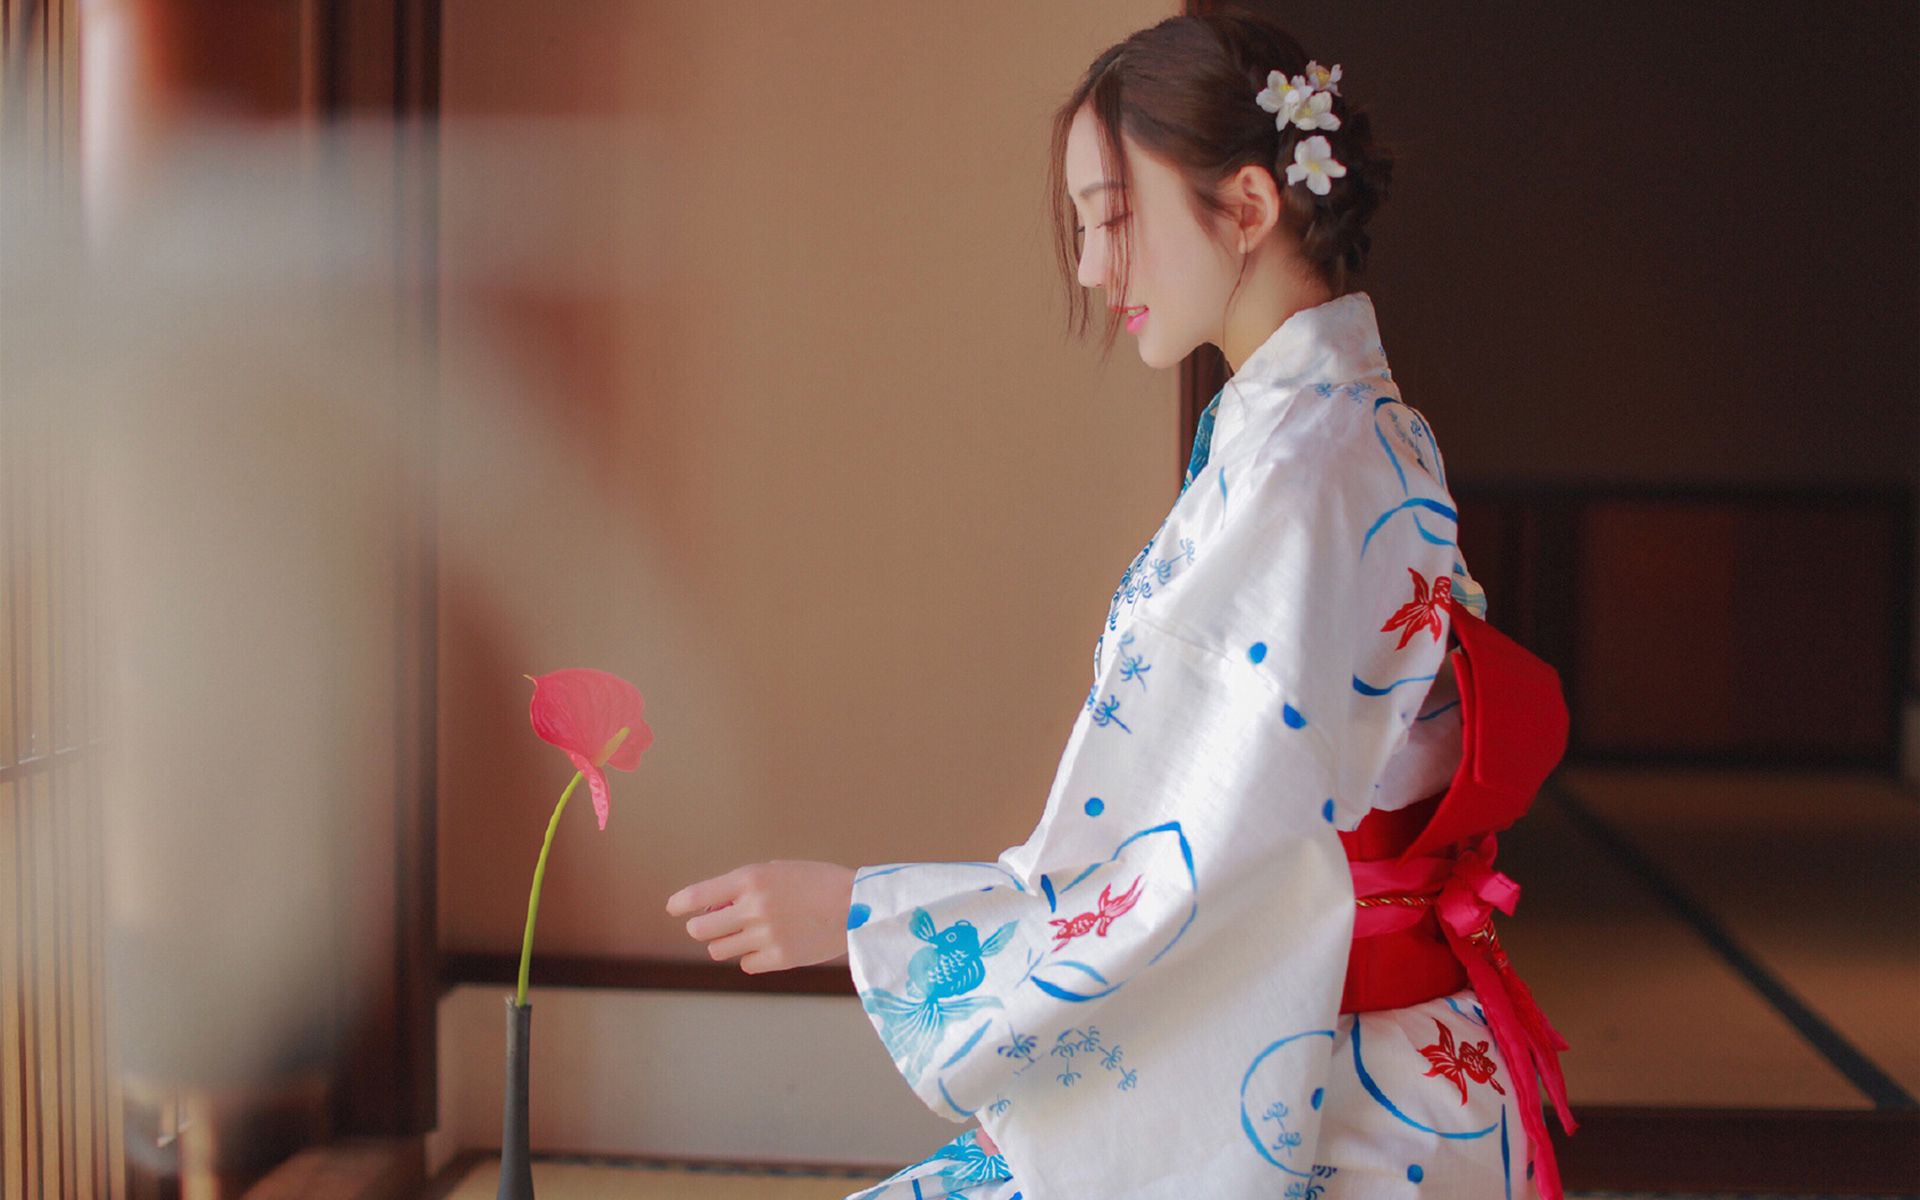 和服美女日系元素古装风格韵味十足桌面壁纸